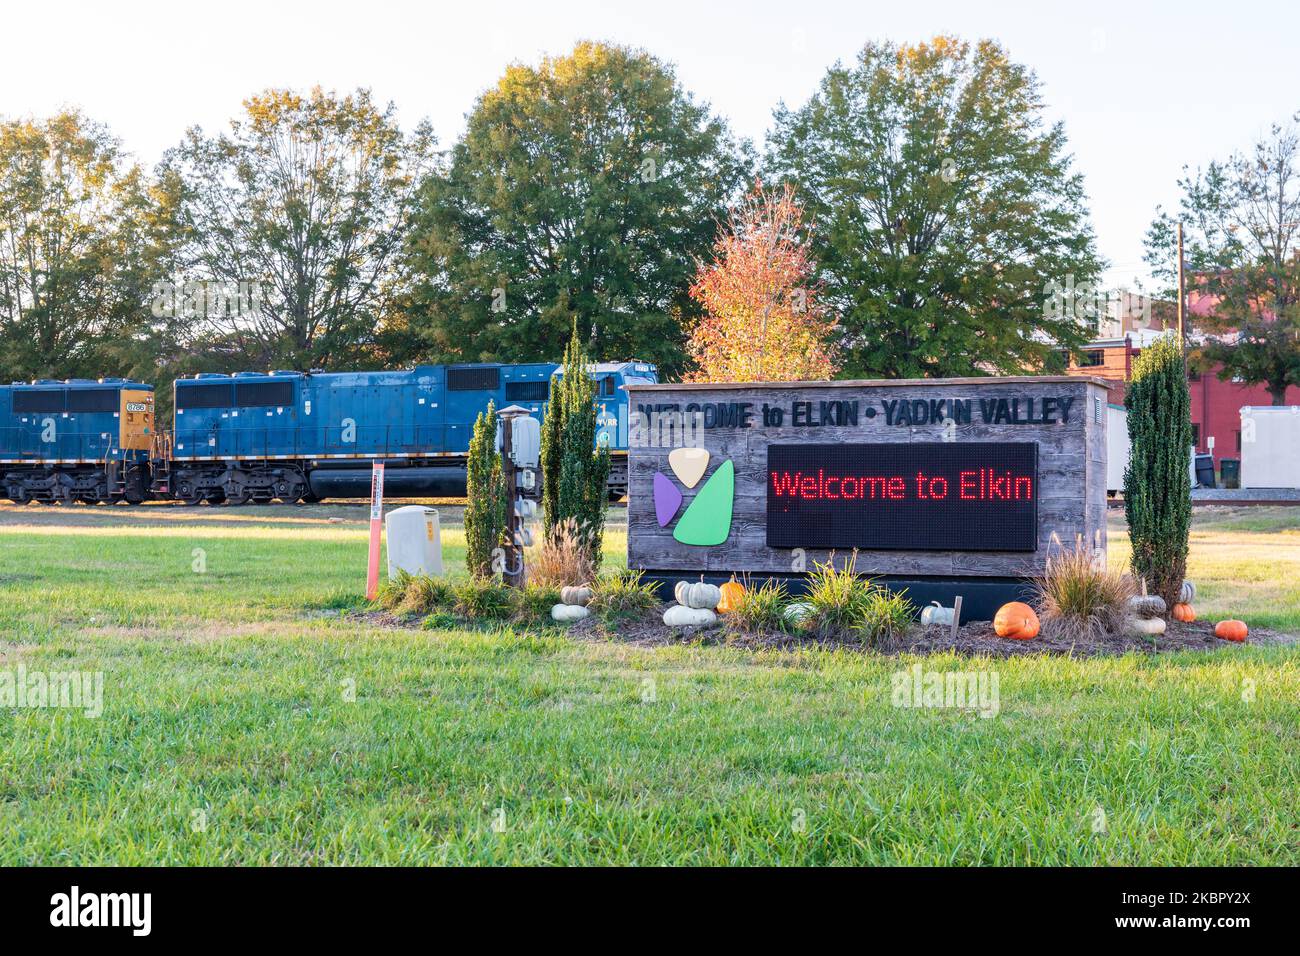 ELKIN, CAROLINA DEL NORTE, EE.UU.-14 DE OCTUBRE de 2022: Señal de monumento-Bienvenido a Elkin, Valle de Yadkin, con locomotora de tren detrás. Foto de stock